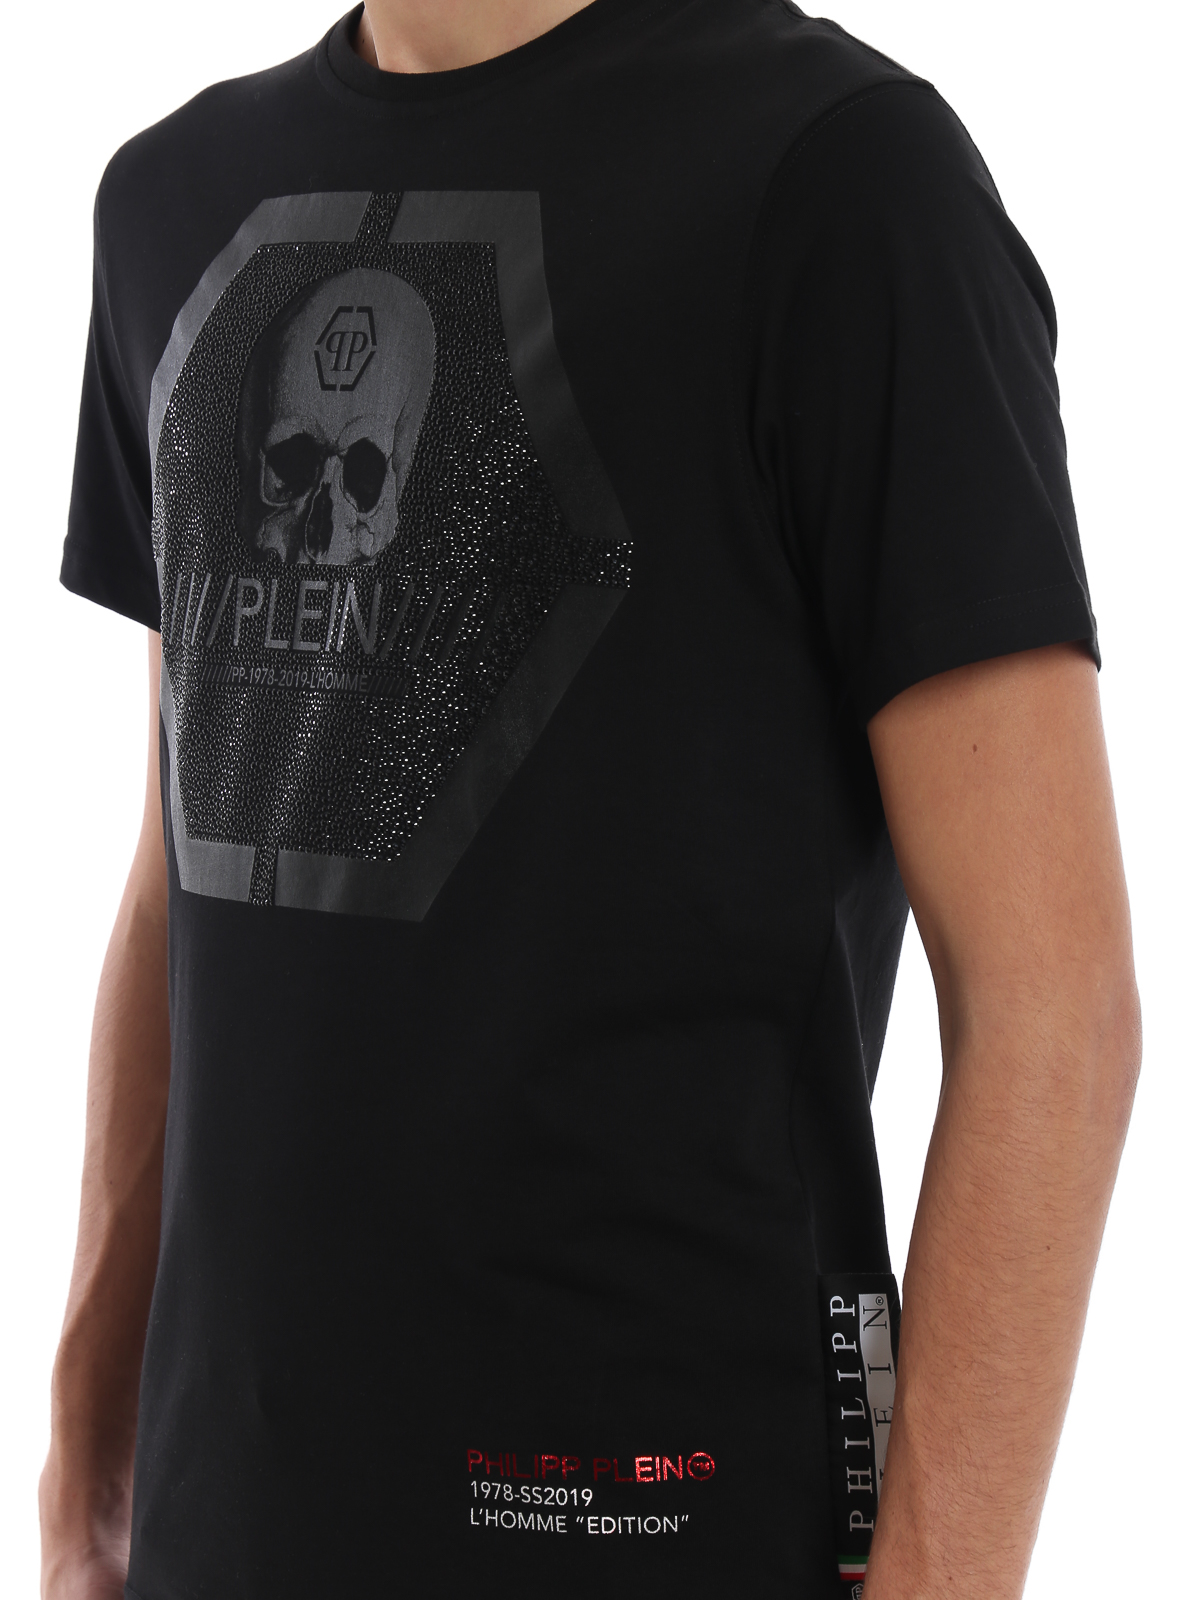 Scheiden Oven havik T-shirts Philipp Plein - Platinum Cut Skull black cotton T-shirt -  S19CMTK3084PJY002N0202